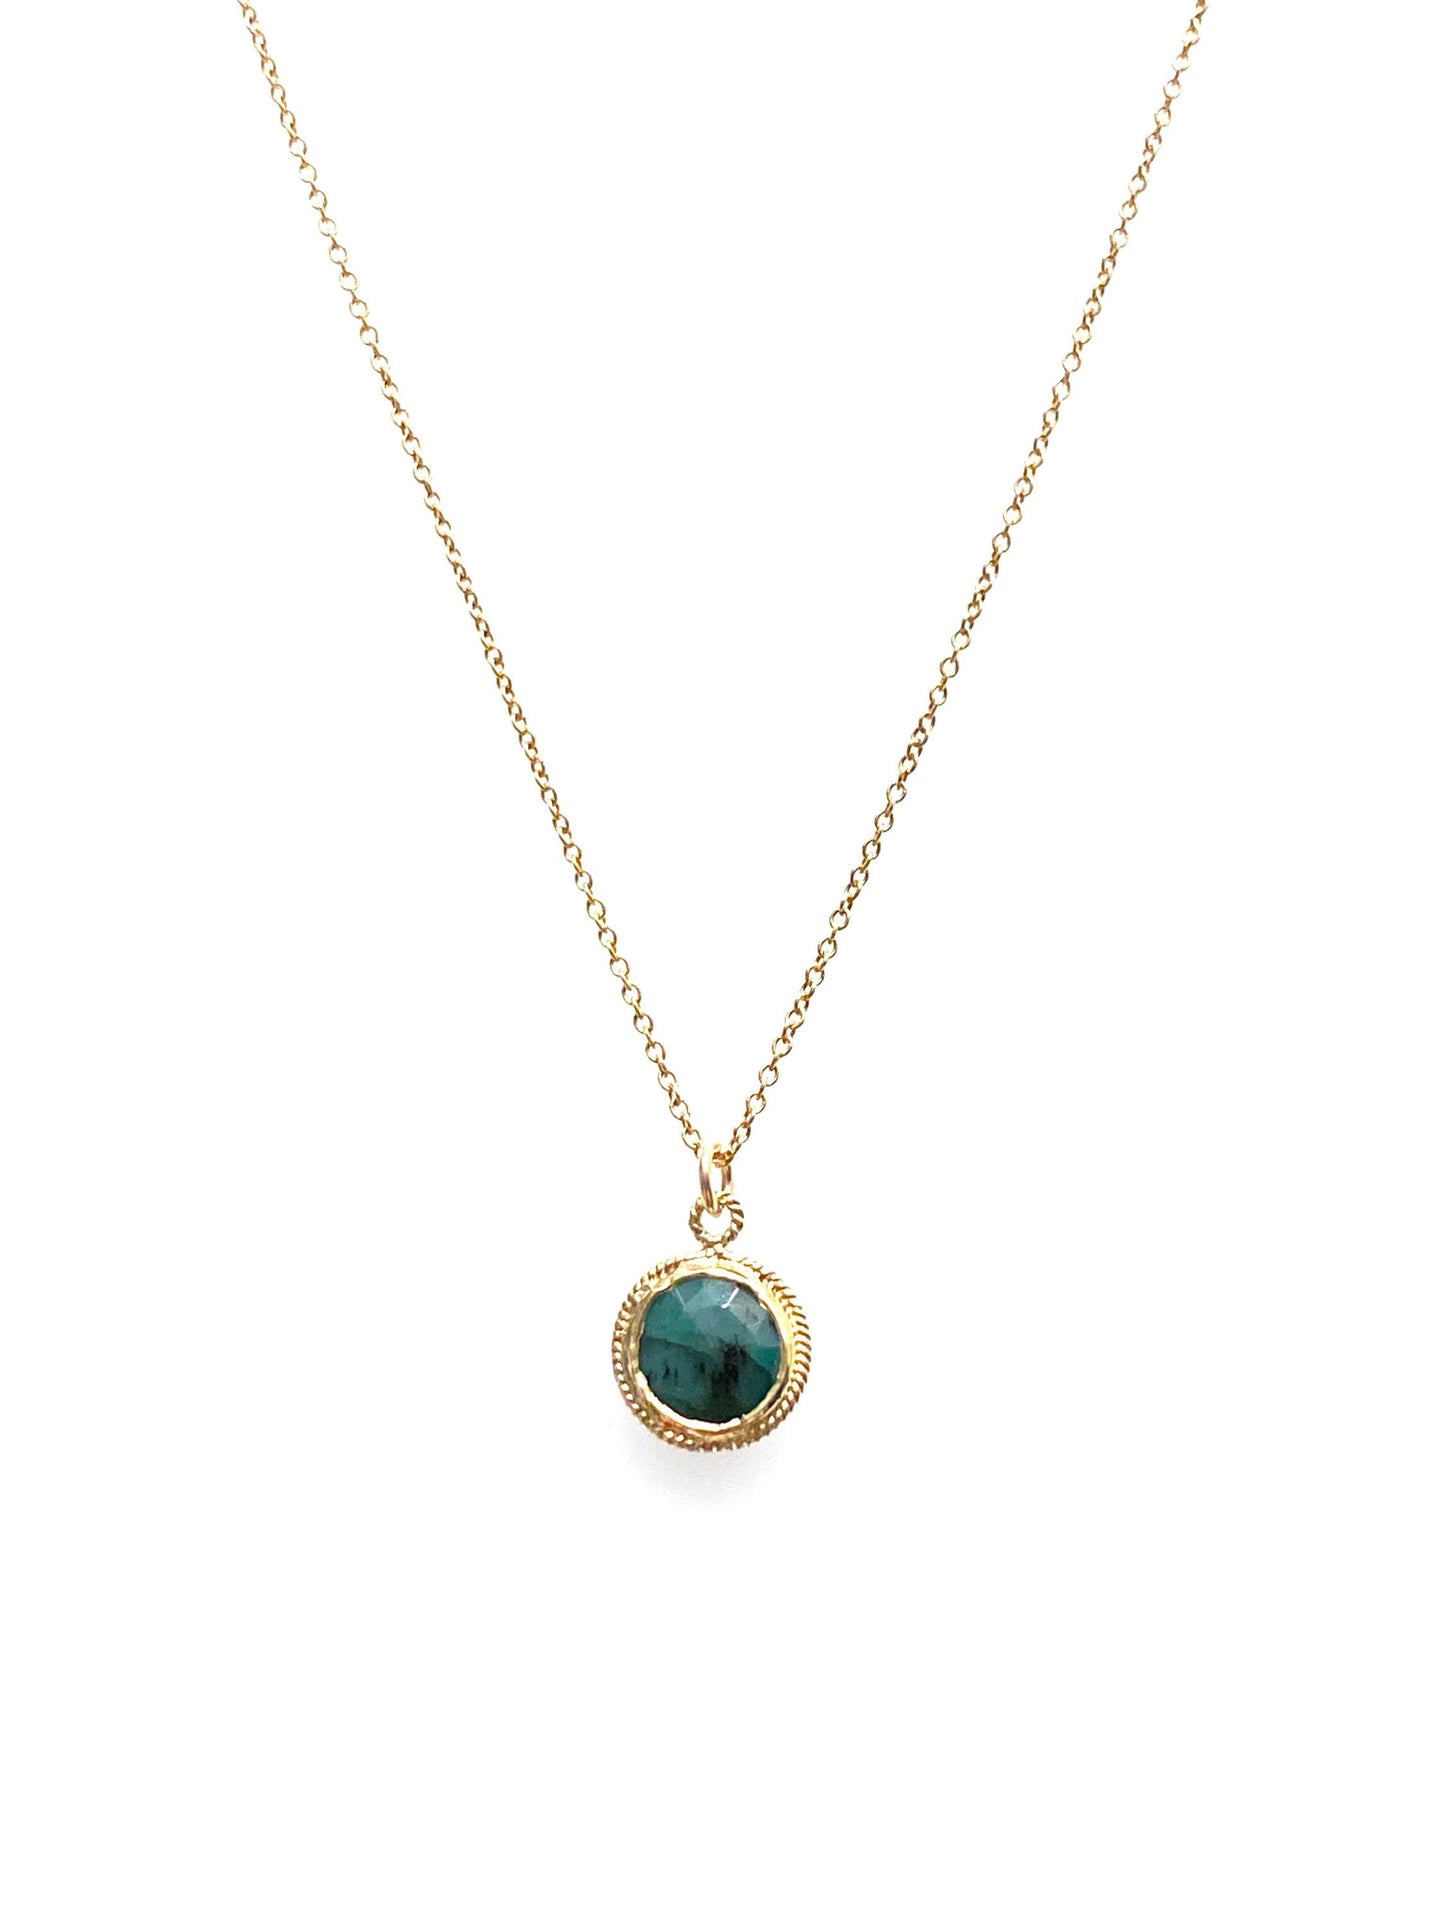 Petite sun medallions (emerald, aquamarine, amethyst, golden rutilated quartz, chocolate moonstone)